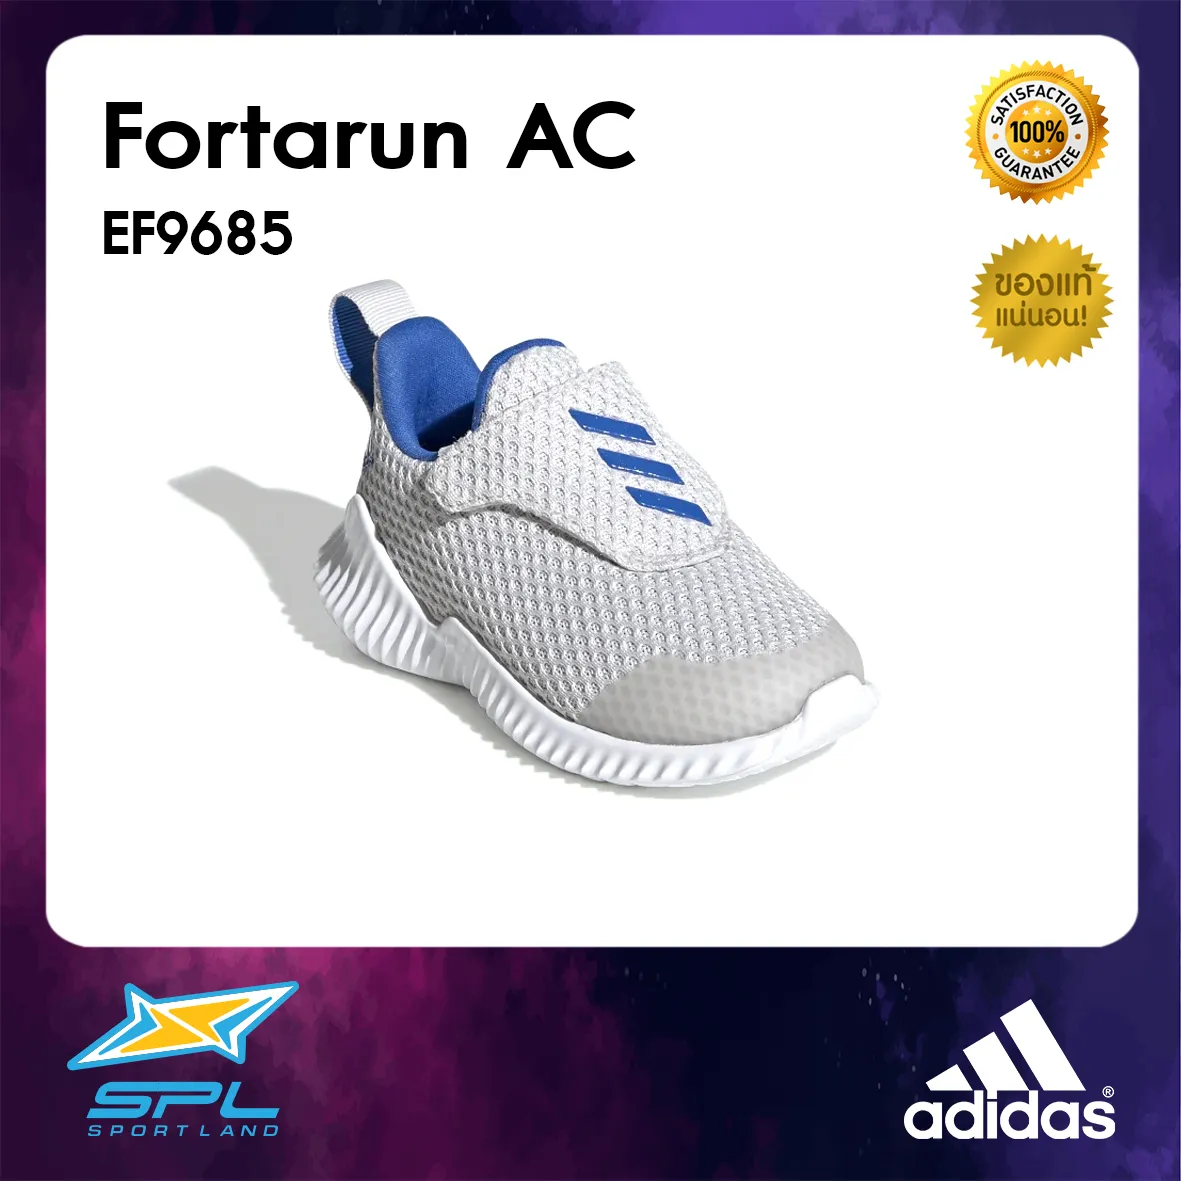 Adidas รองเท้าวิ่งเด็ก รองเท้าแฟชั่น รองเท้ากีฬา รองเท้าผ้าใบ รองเท้าเด็ก อาดิดาส Running Infants Shoe Fortarun AC EF9685 (1200)